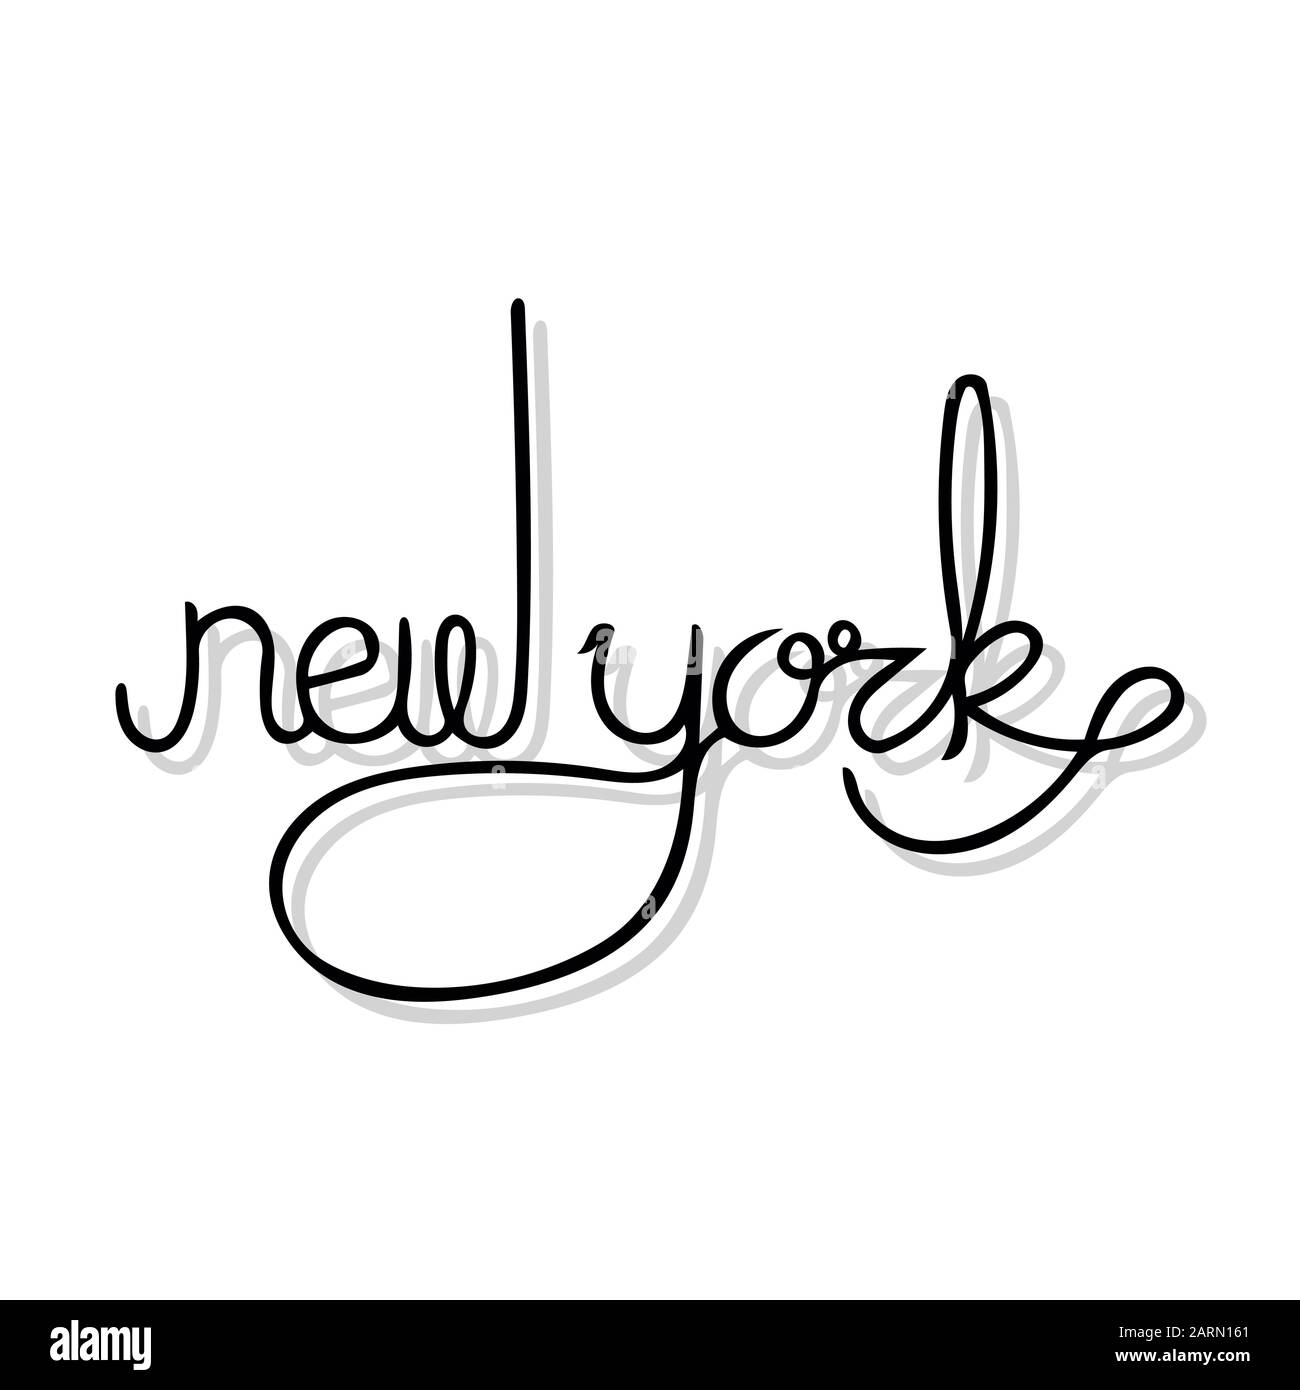 Nom de l'état écrit à la main de New York. Lettrage manuel en couleur noire et ombre grise sur fond blanc. Illustration de Vecteur